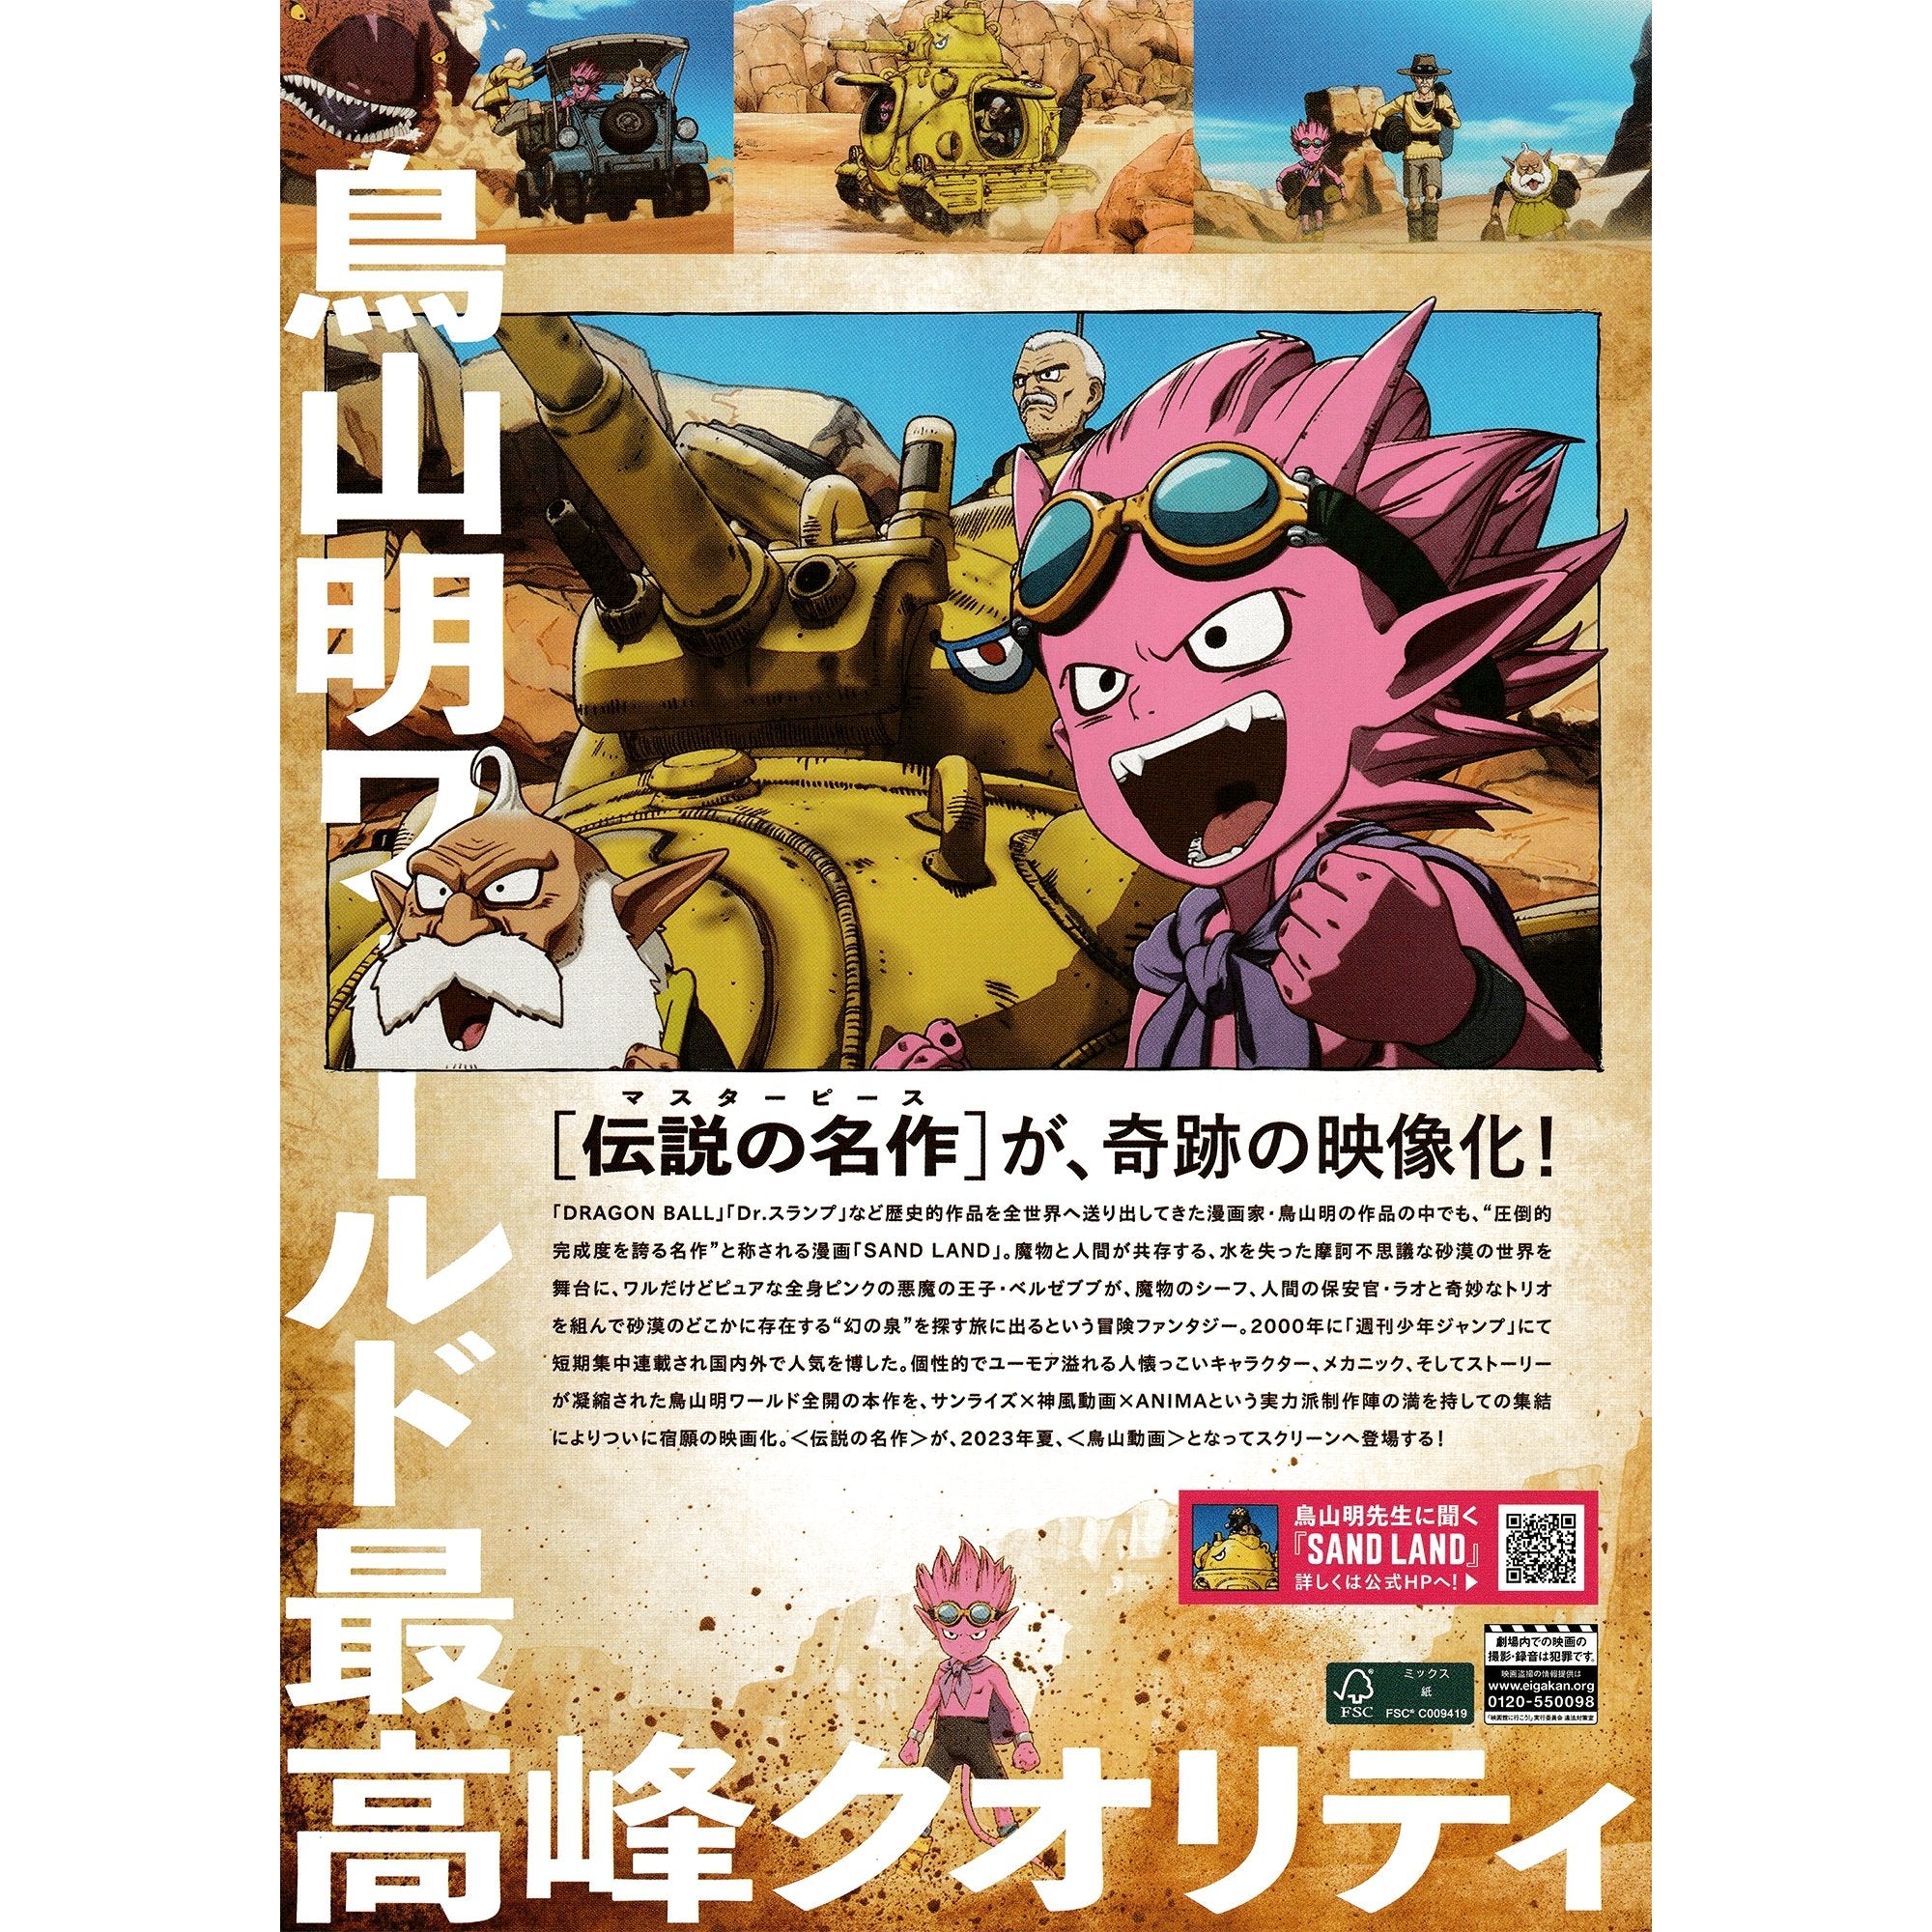 DRAGONBALL EVOLUTION-Original Japanese Mini Poster Chirashi